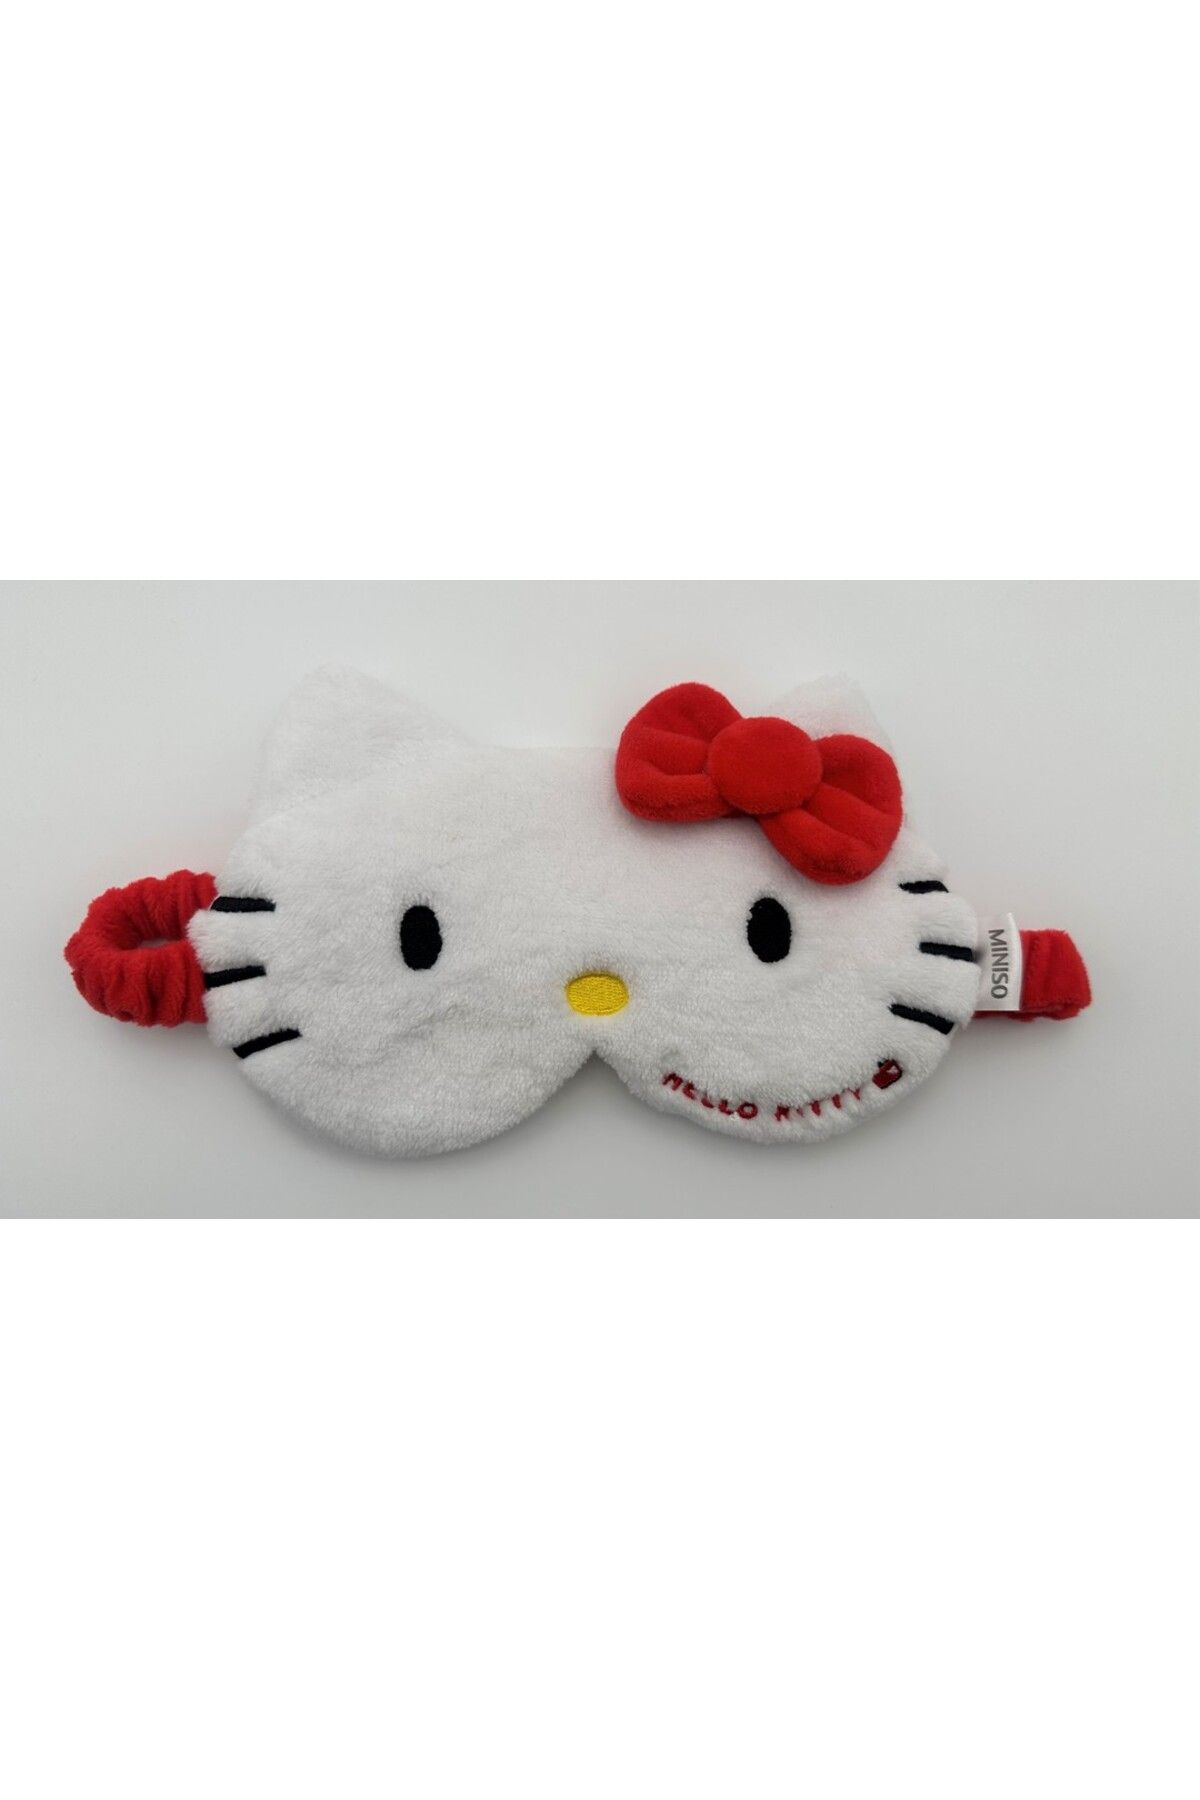 Miniso Hello Kitty Lisanslı Elma Koleksiyonu Peluş Uyku Gözlüğü